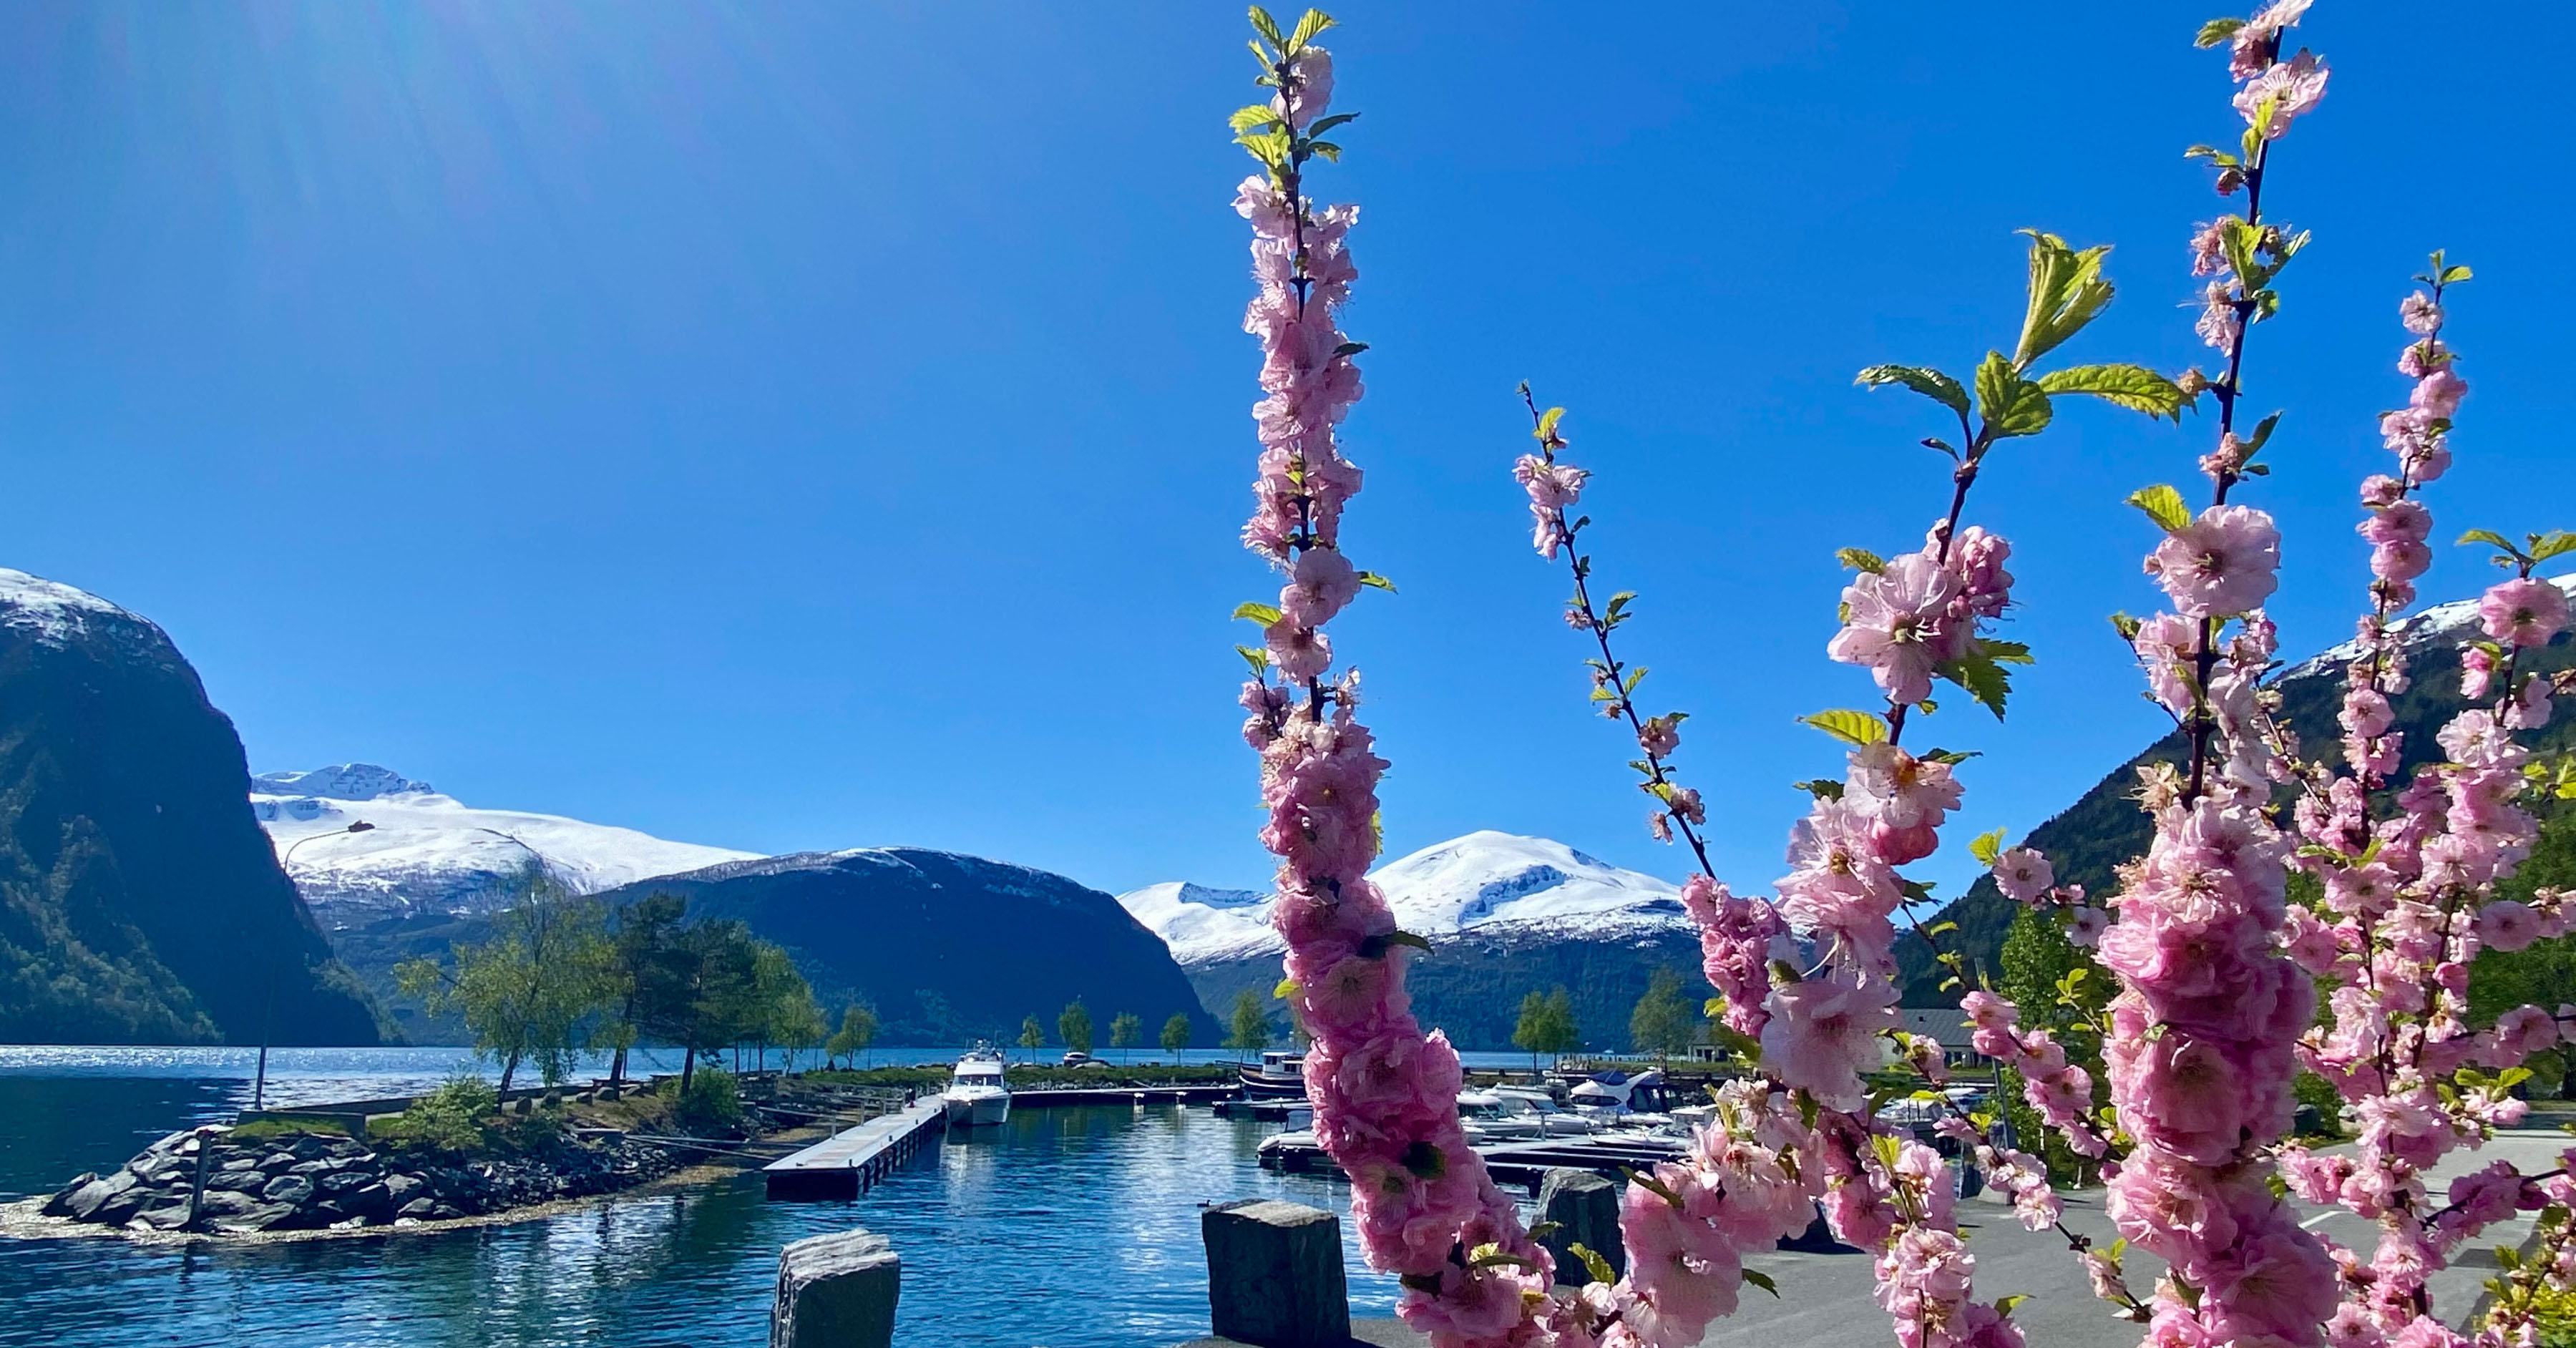 Fjord kommune har fire flotte årstider med store kontrastar. Våren byr på fruktblomstring og båtliv ved fjorden medan vinteren ikkje har sleppt heilt taket i fjellet.